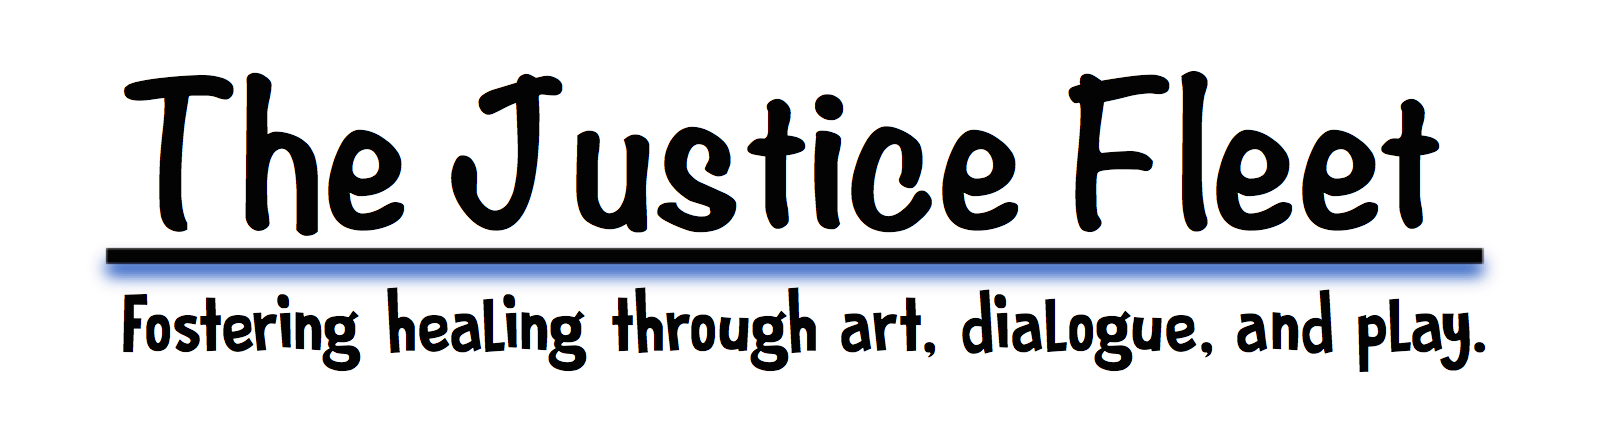 Justice Fleet Logo